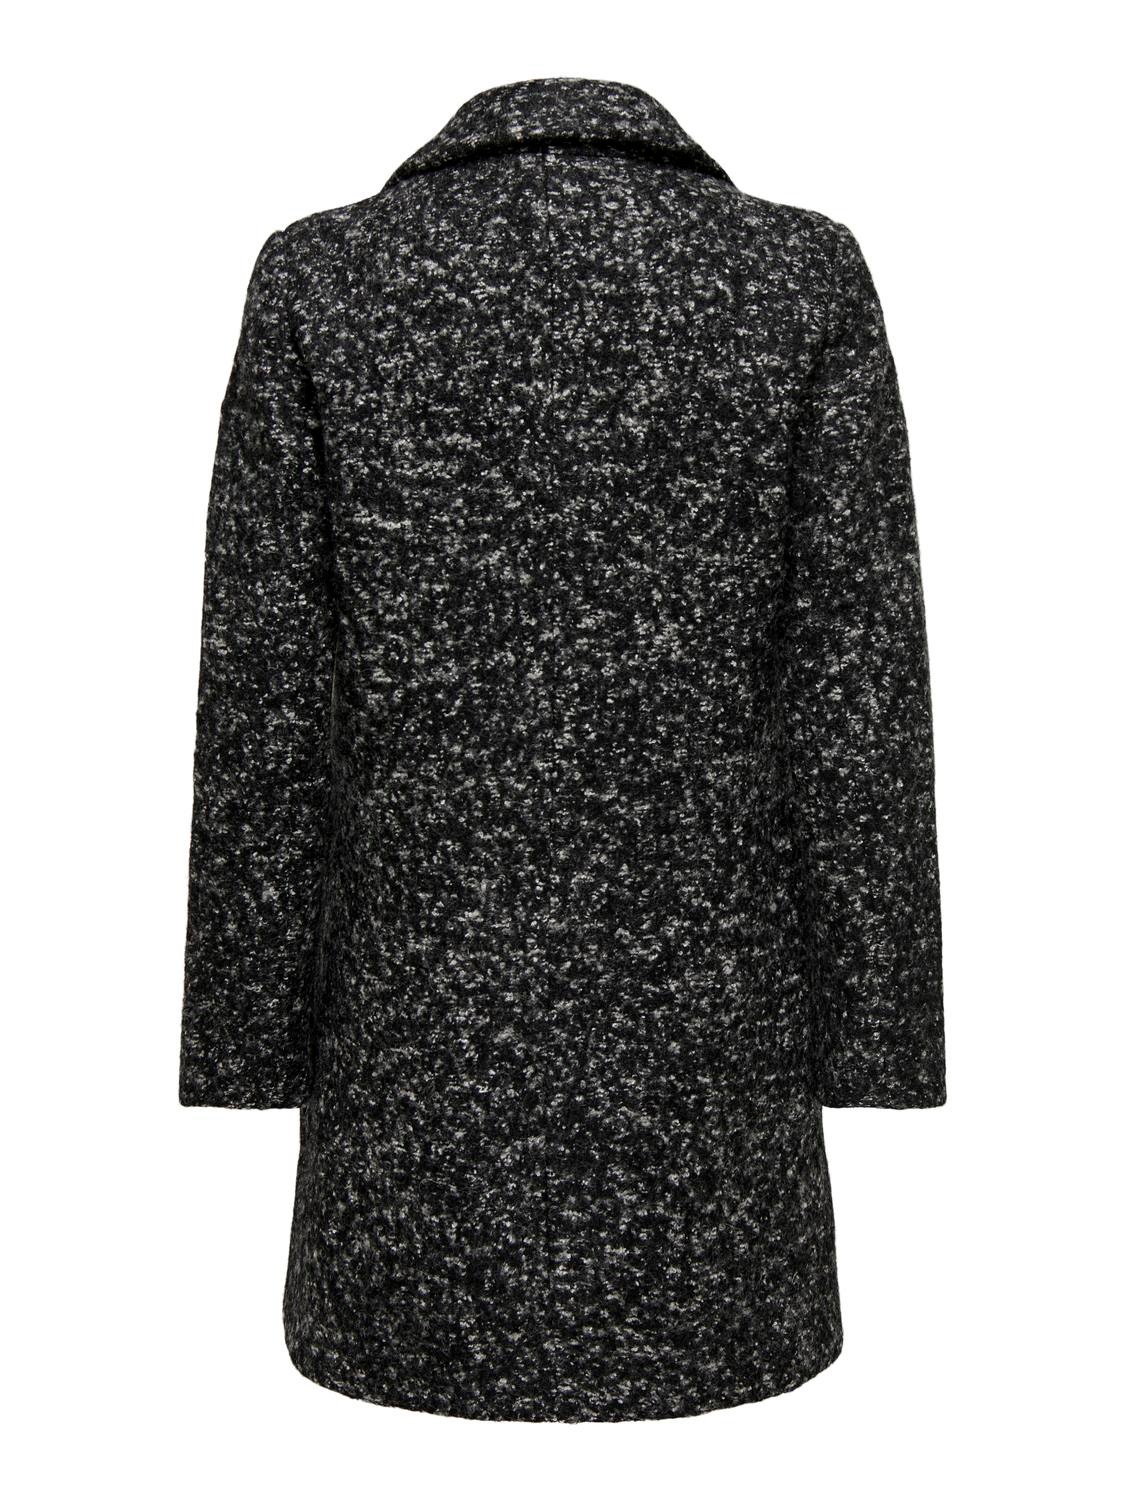 ONLY Short reverse coat -Black - 15300630